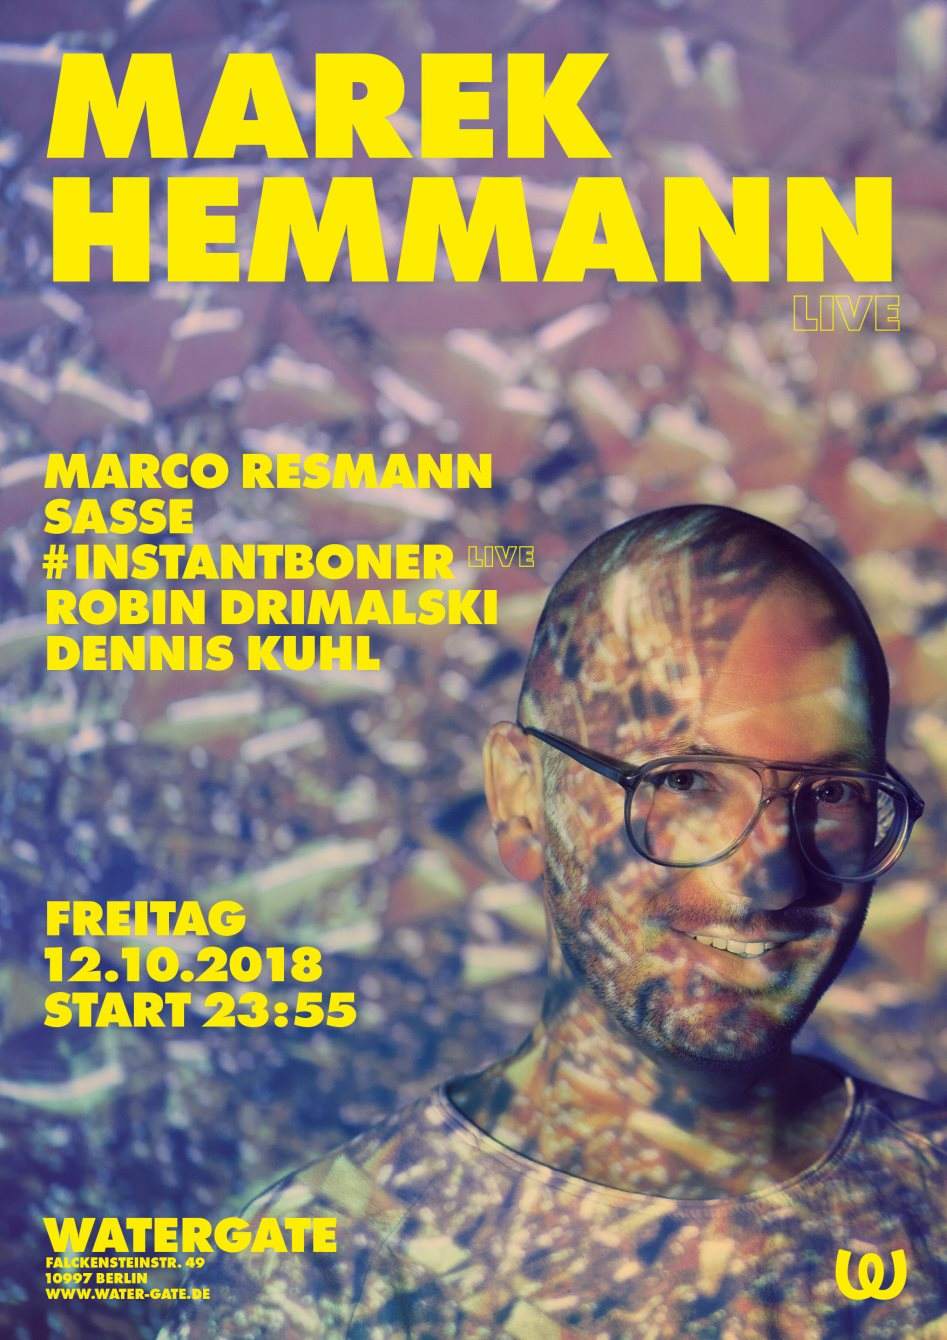 Marek Hemmann with Marco Resmann, Sasse, Instantboner, Robin Drimalski, Dennis Kuhl - Página frontal